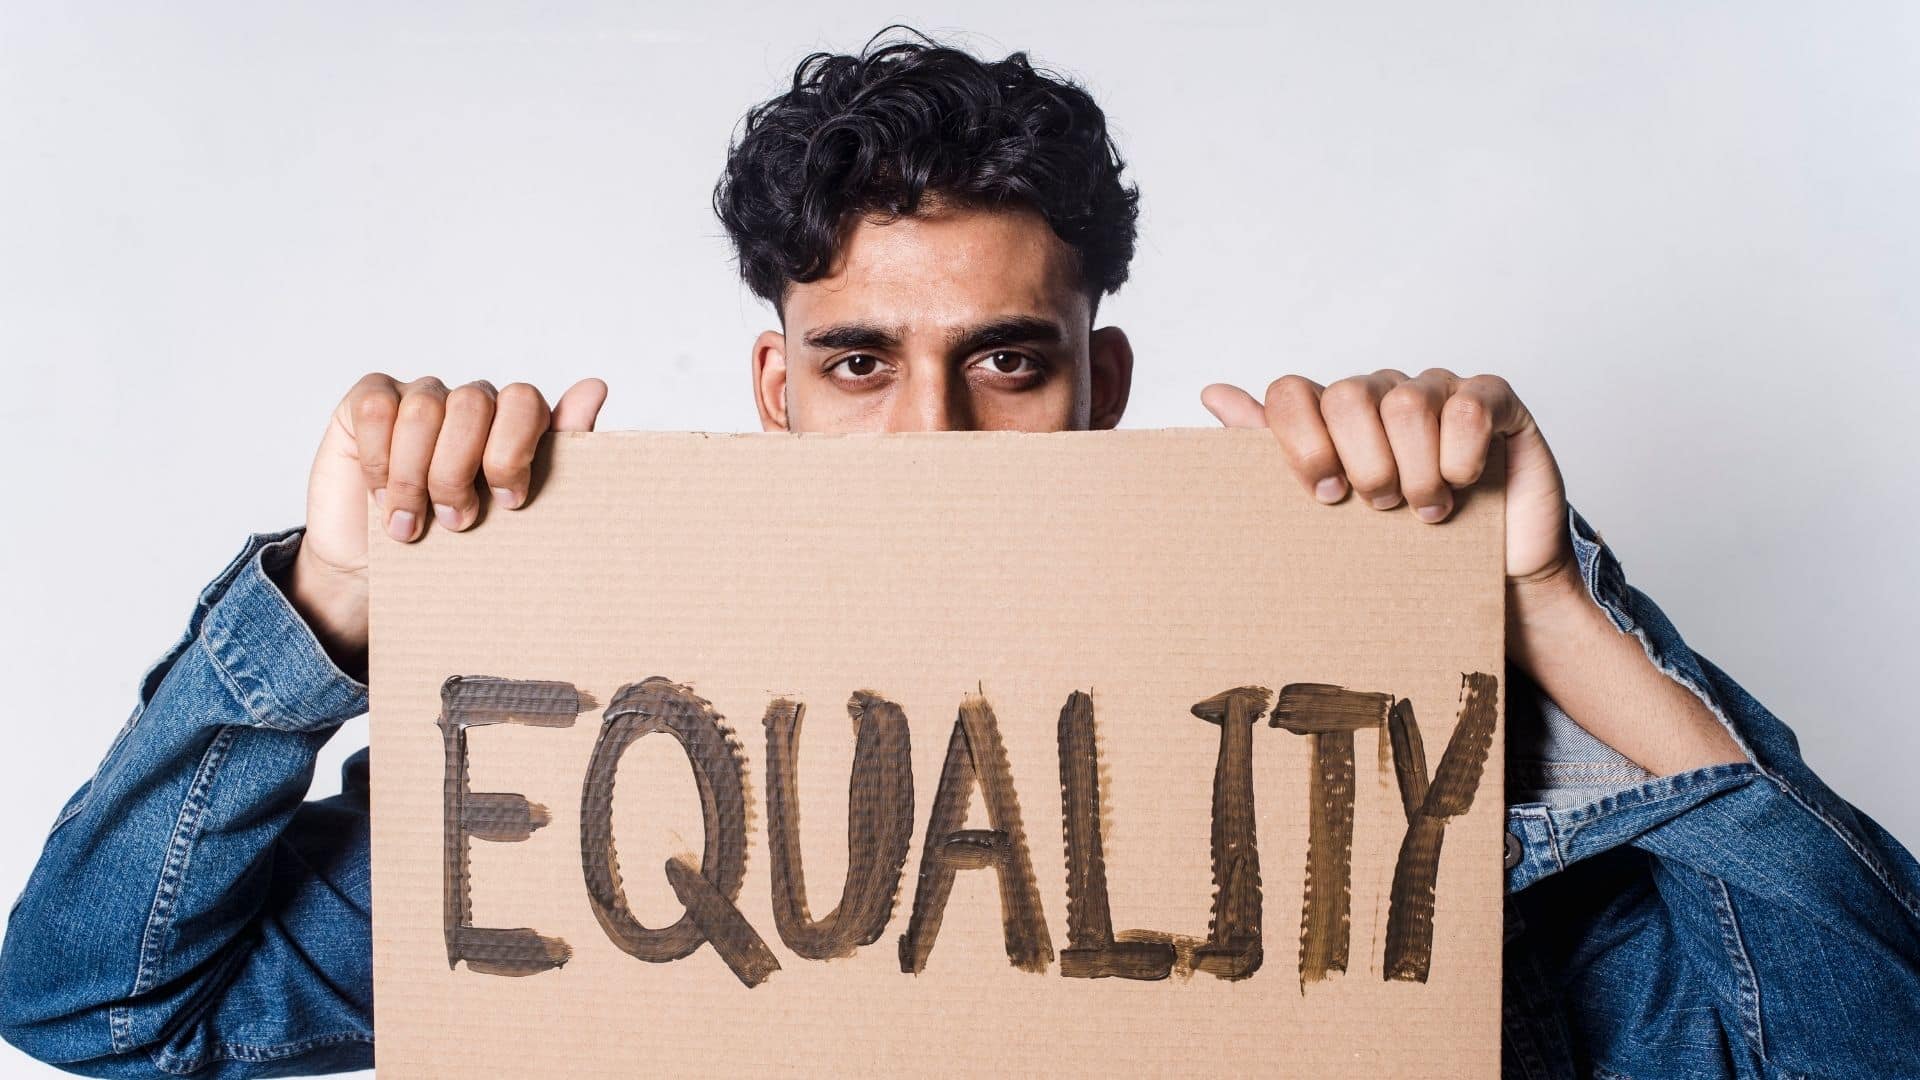 Um homem segurando uma placa de papelão escrita "equality".